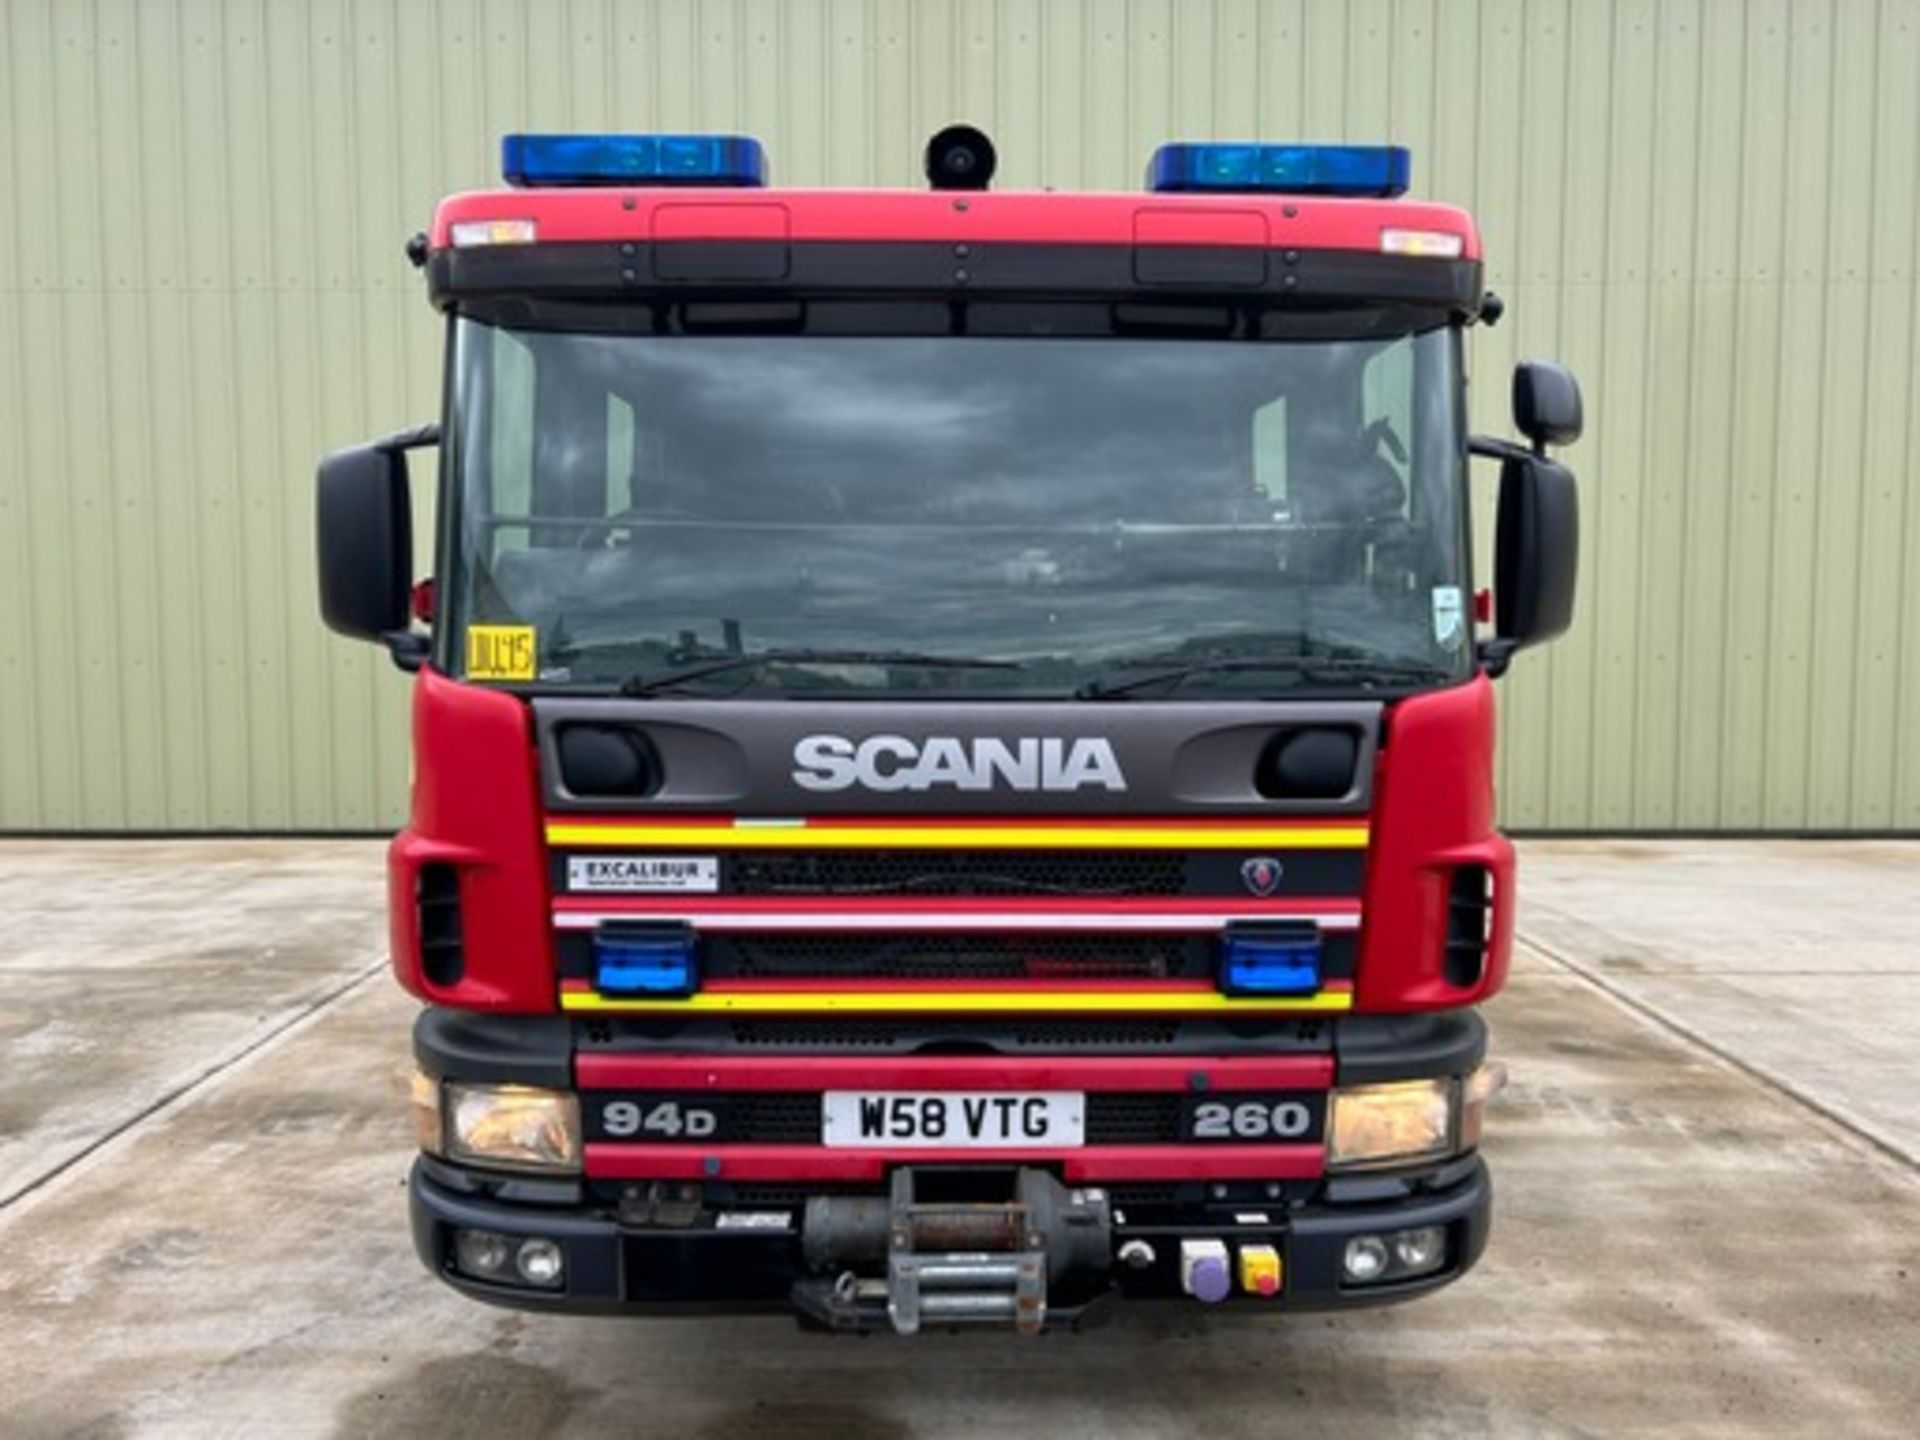 Scania Excalibur 94D 260 Fire Appliance - Bild 5 aus 26